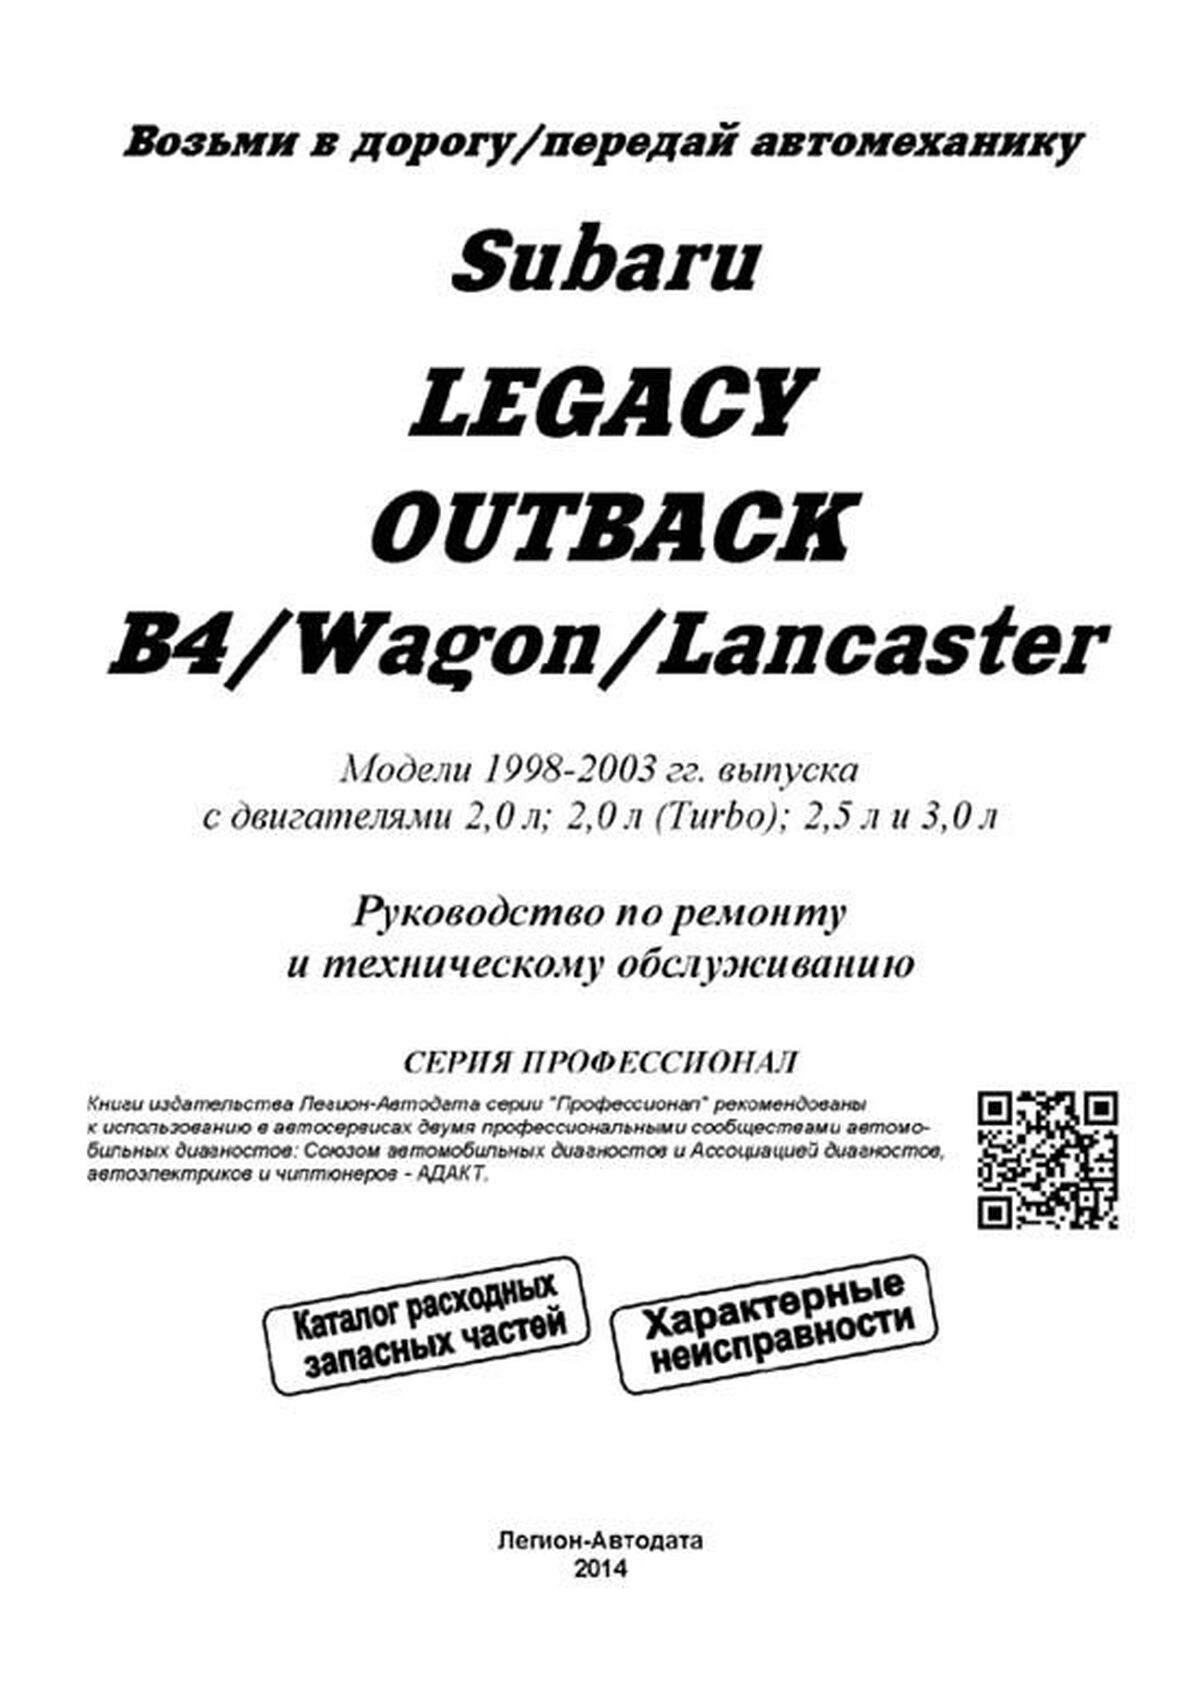 Книга: SUBARU LEGACY / OUTBACK / B4 / WAGON / LANCASTER (б) 1998-2003 г.в. рем., экспл., то, сер.ПРОФ. | Легион-Aвтодата